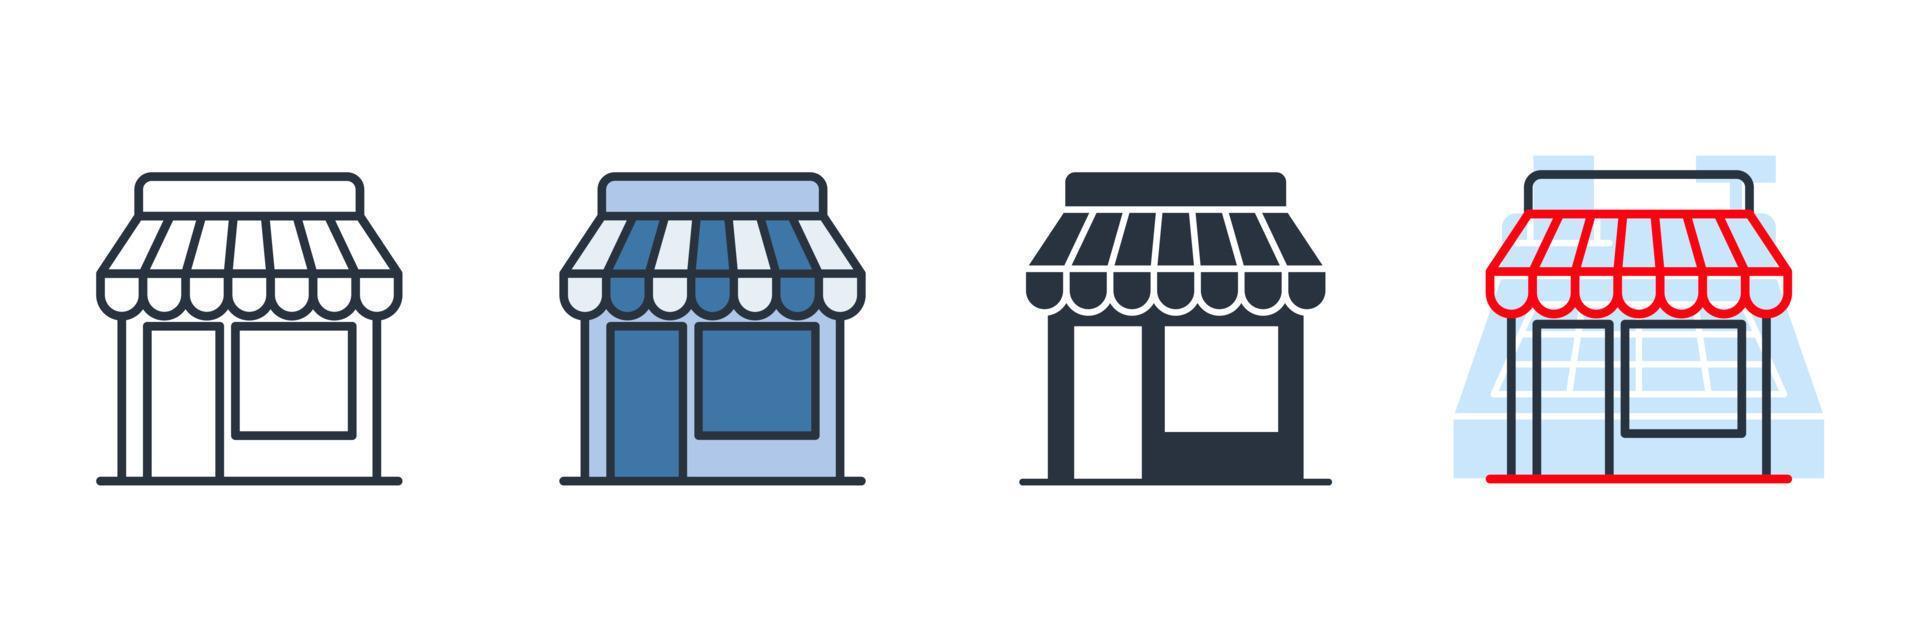 Shop-Symbol-Logo-Vektor-Illustration. Marktsymbolvorlage für Grafik- und Webdesign-Sammlung vektor